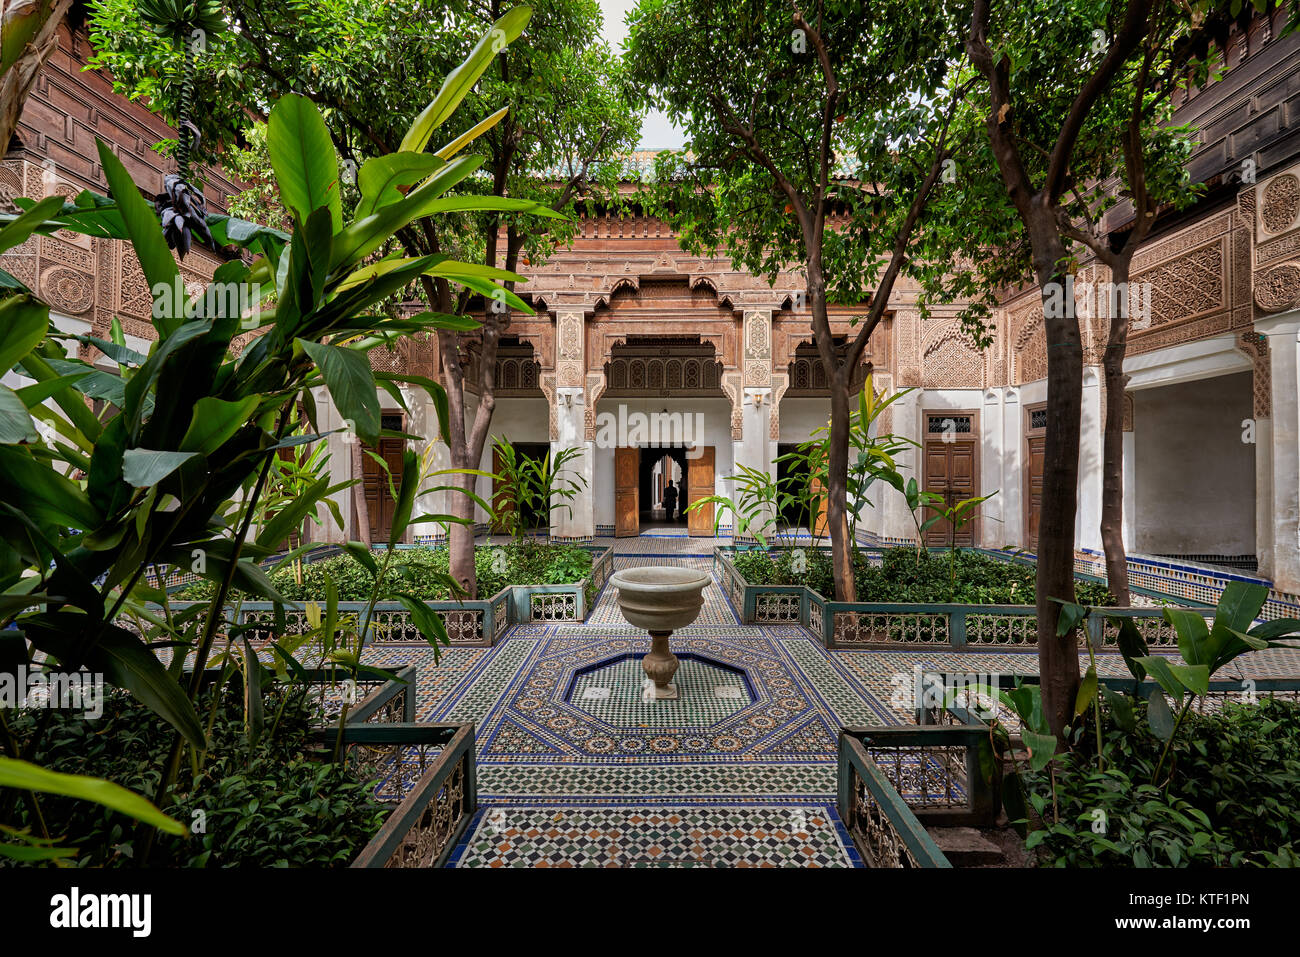 Patio interior decorado en estilo morisco del palacio Bahia, Marrakech, Marruecos, África Foto de stock